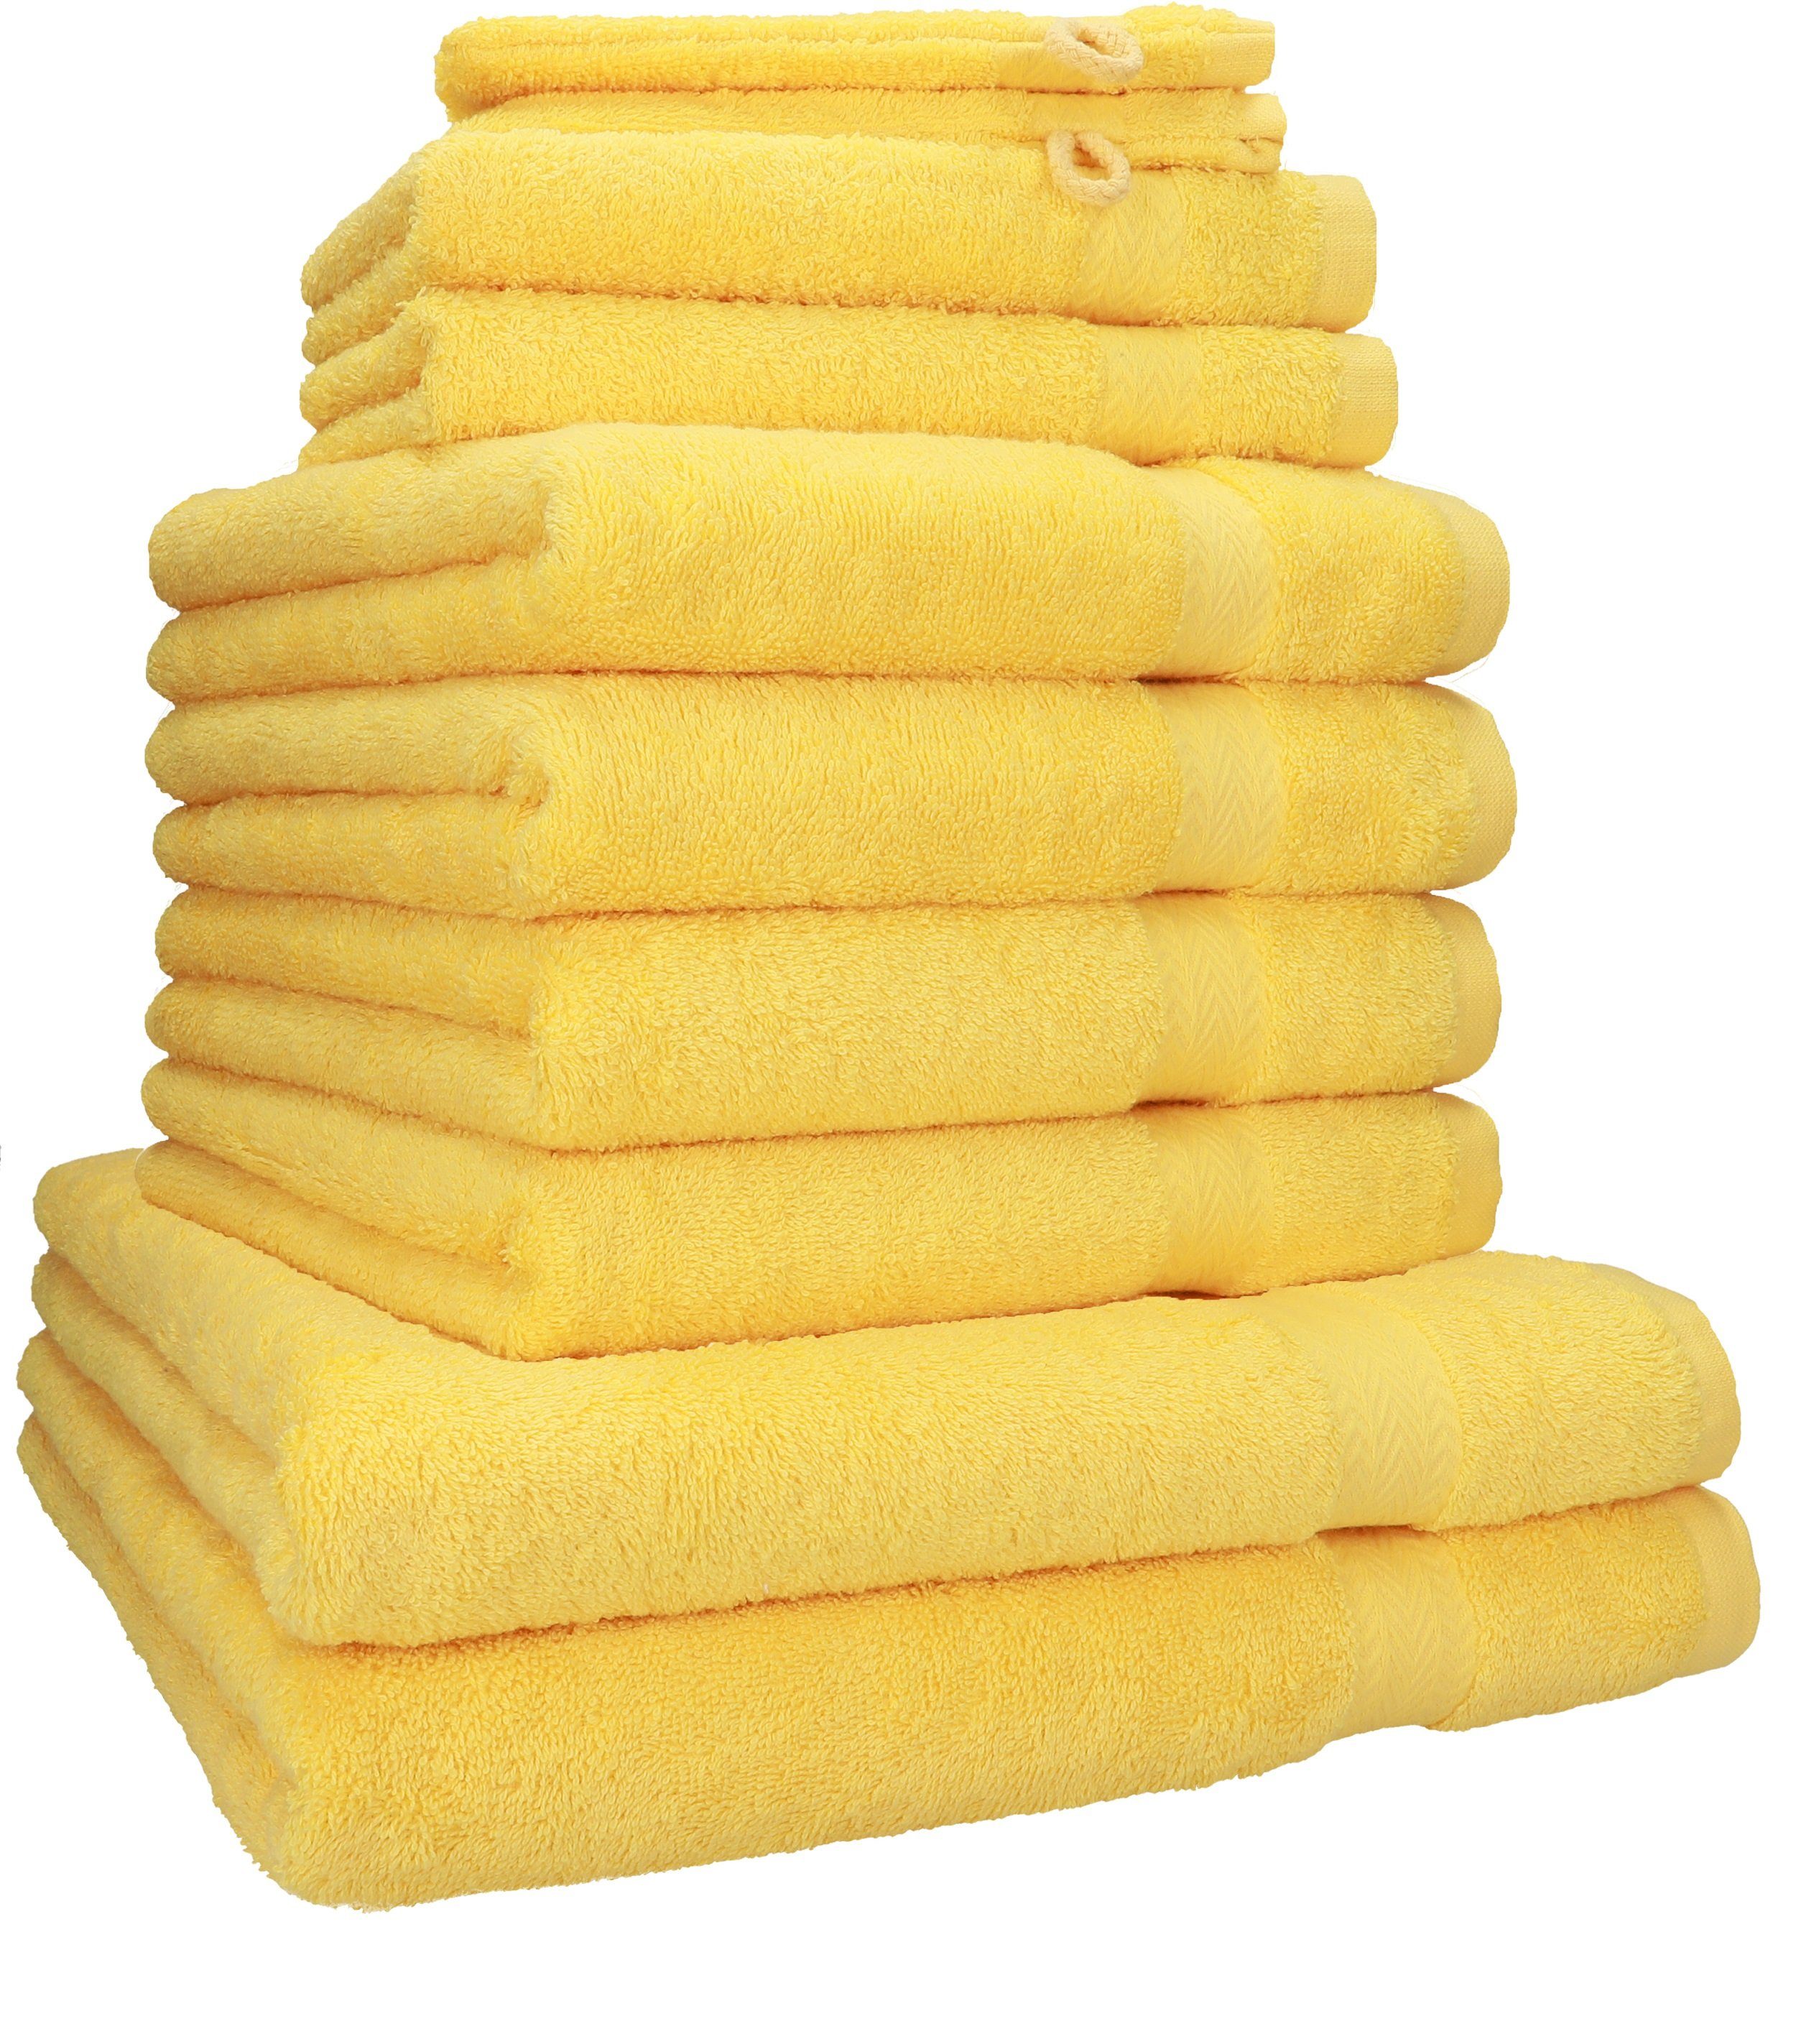 Betz Handtuch Set 10-tlg. Handtuch-Set PREMIUM 100% Baumwolle, 100% Baumwolle, (10-tlg) gelb | Handtuch-Sets